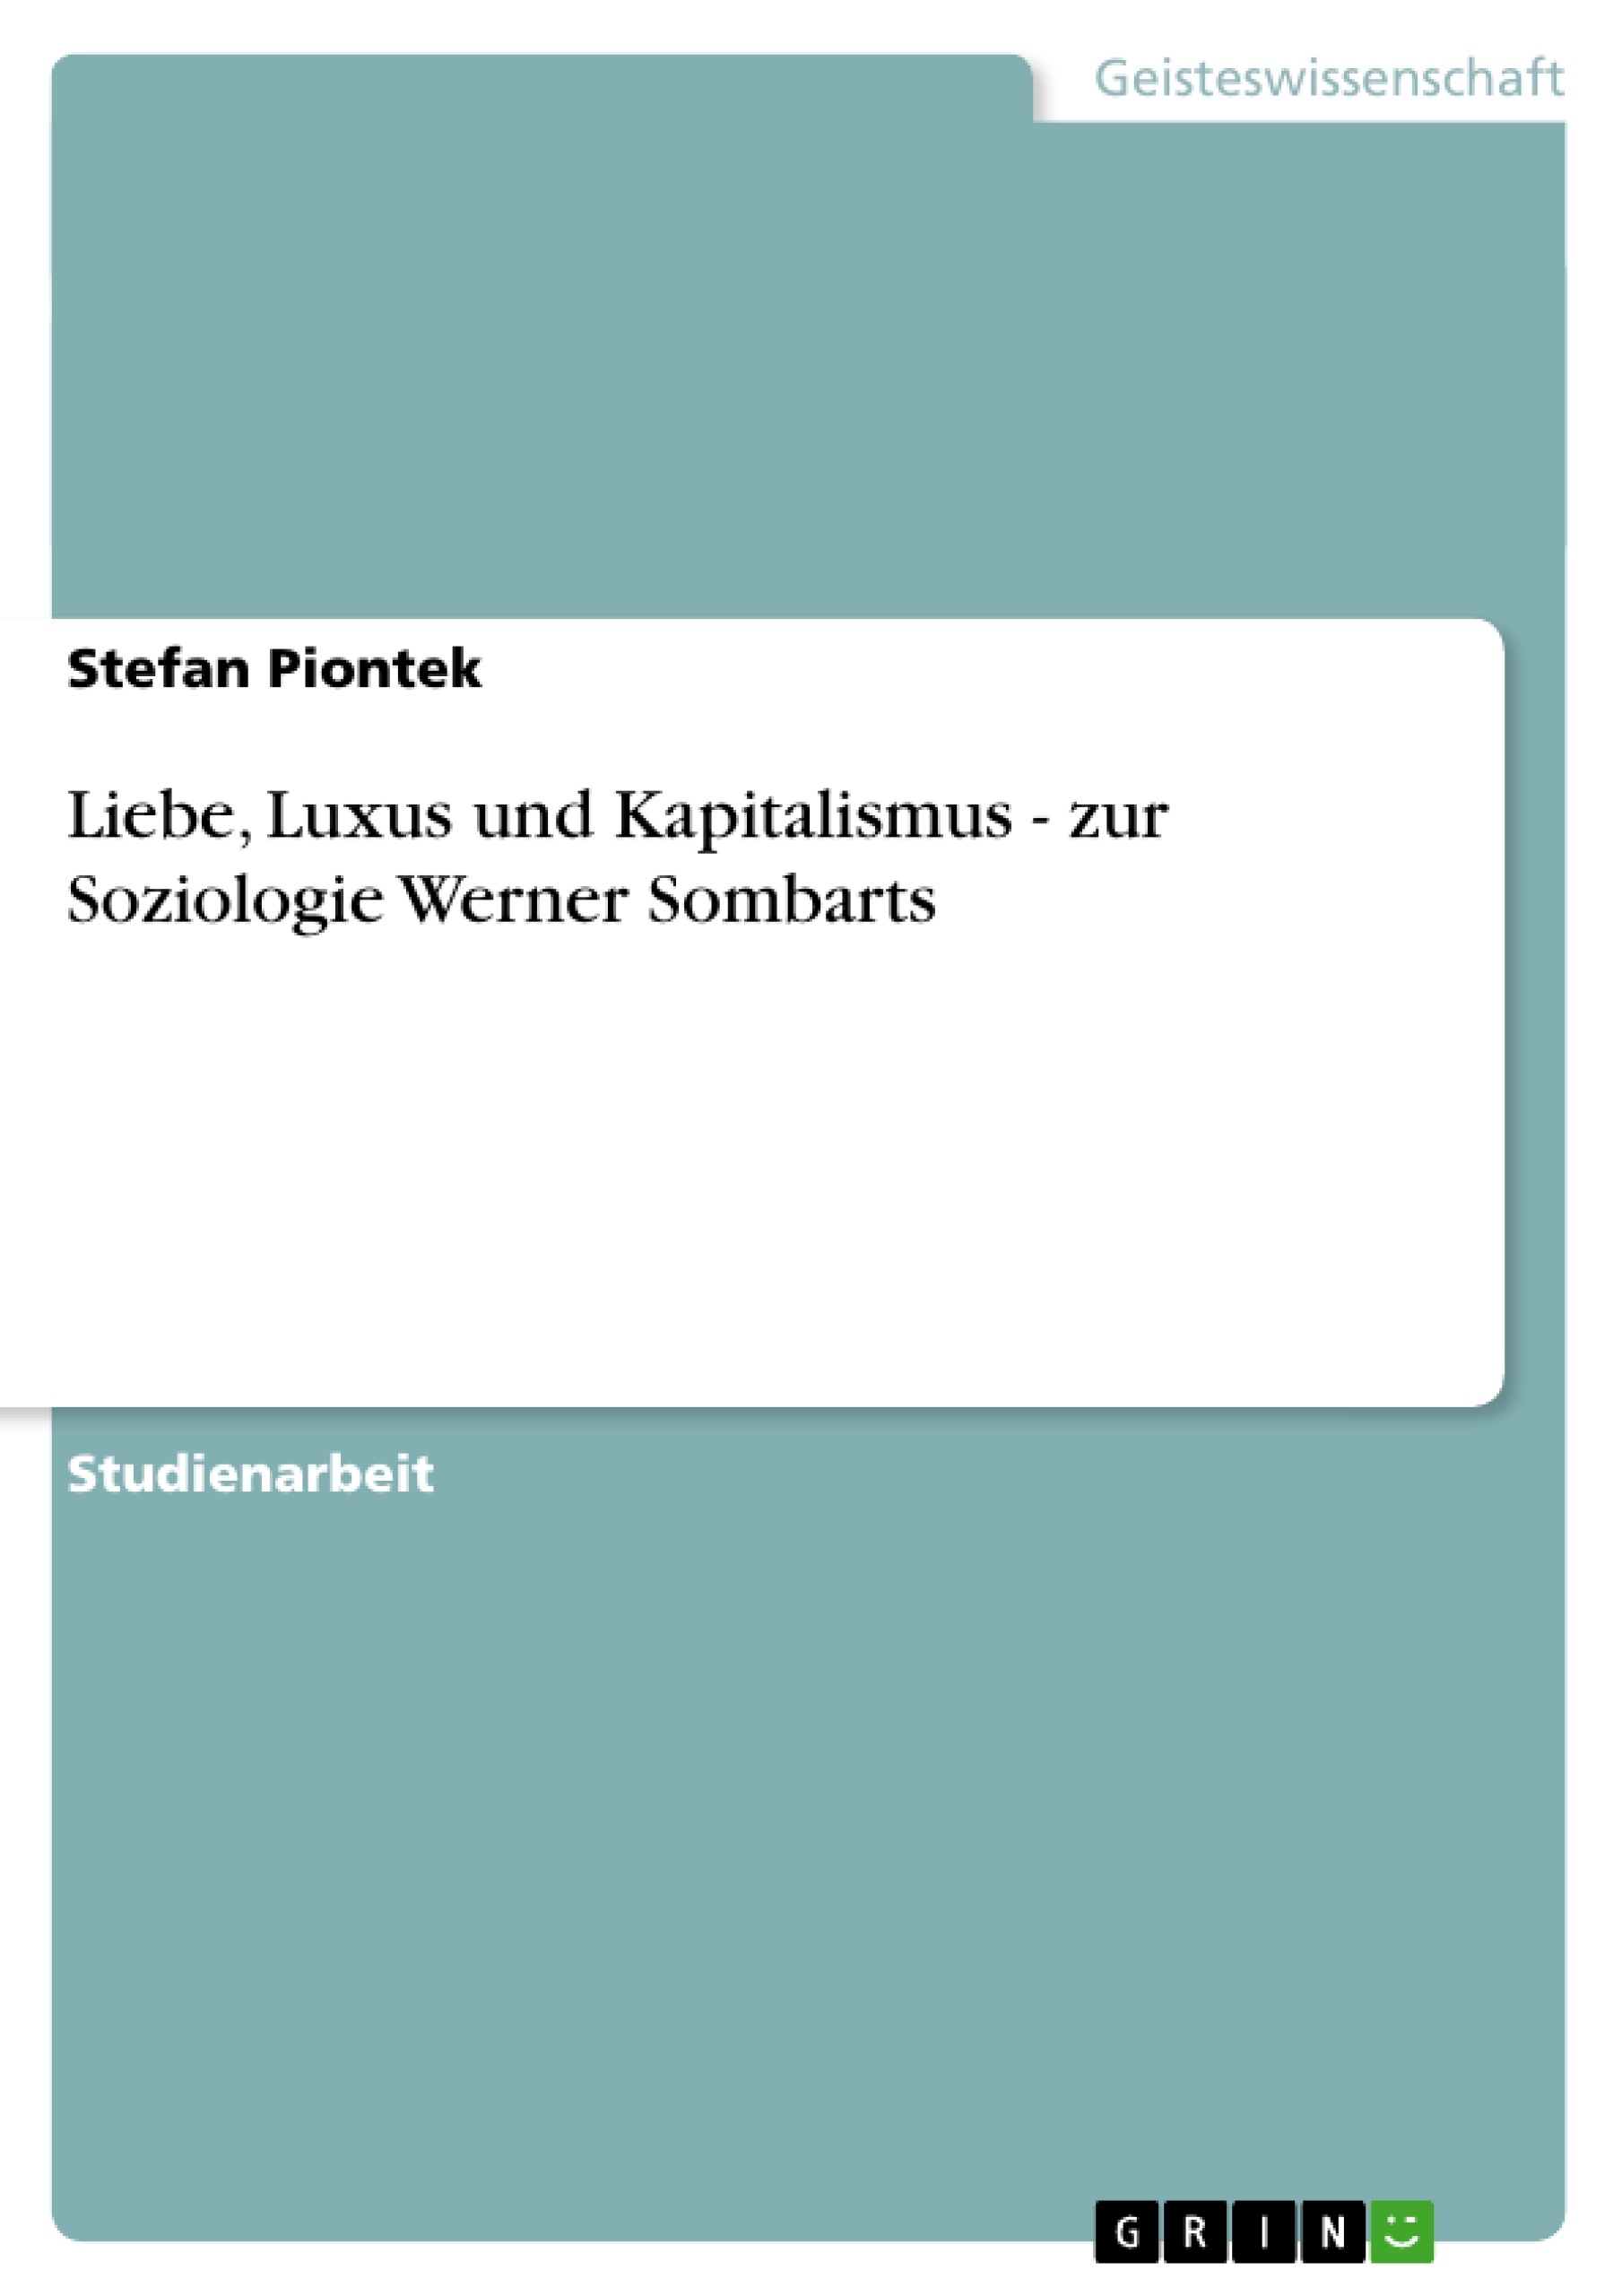 Título: Liebe, Luxus und Kapitalismus - zur Soziologie Werner Sombarts